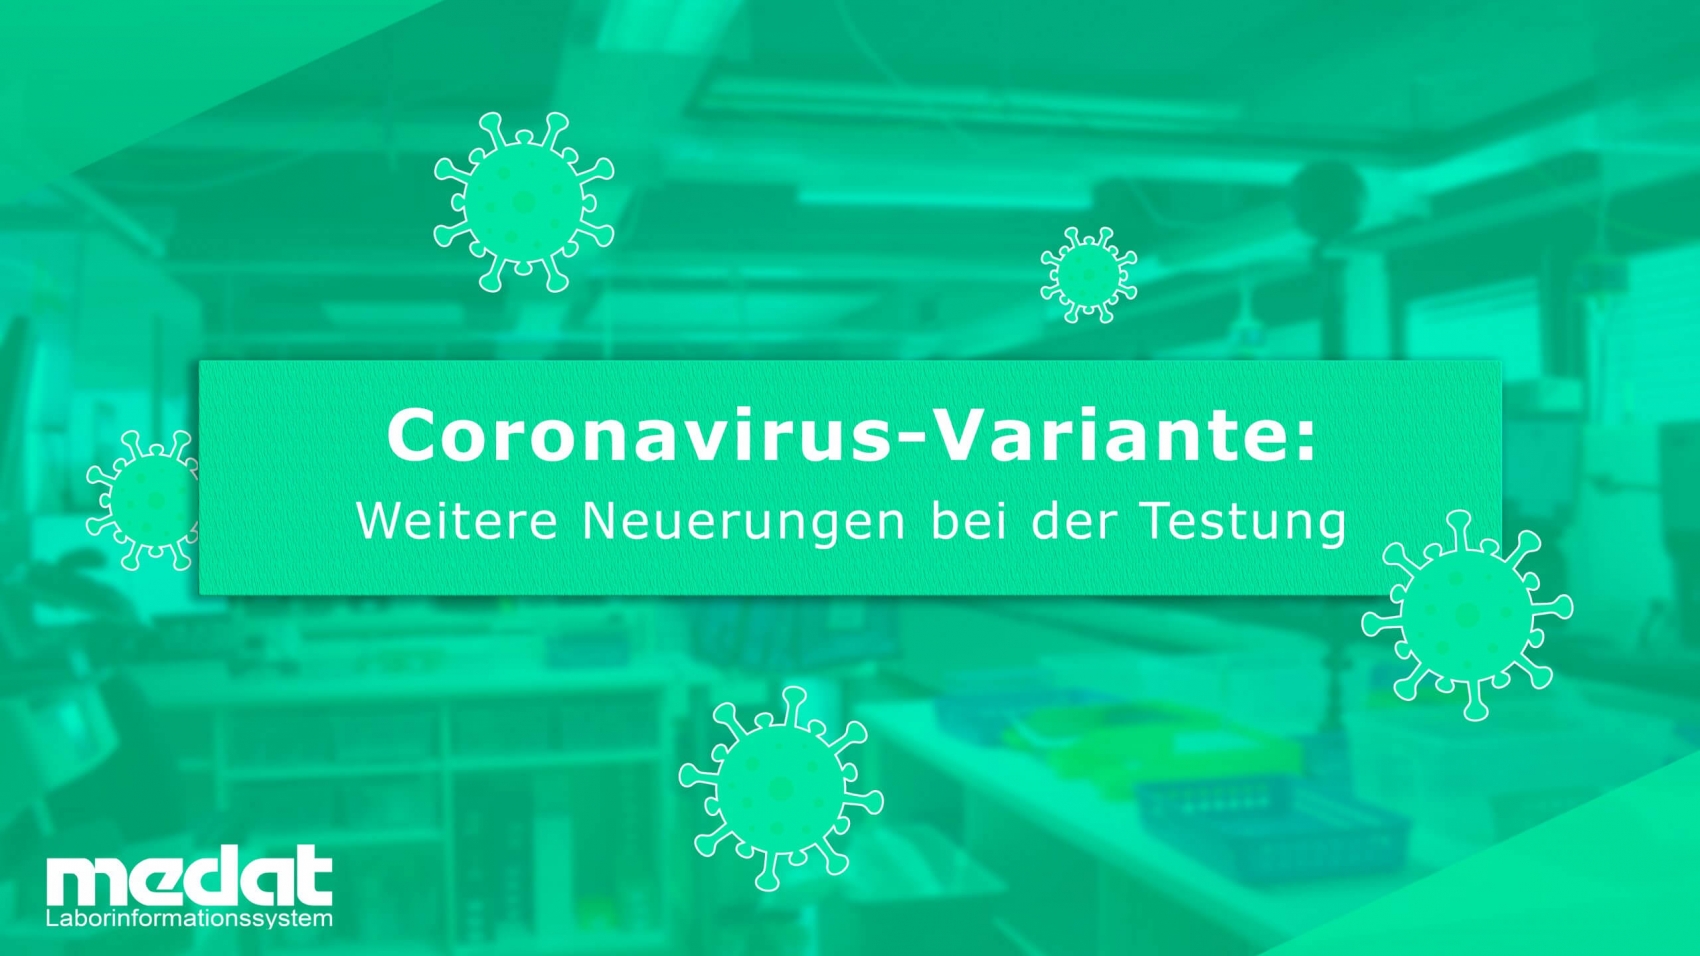 Medat Laborinformationssystem hilft bei Testungen des Coronavirus